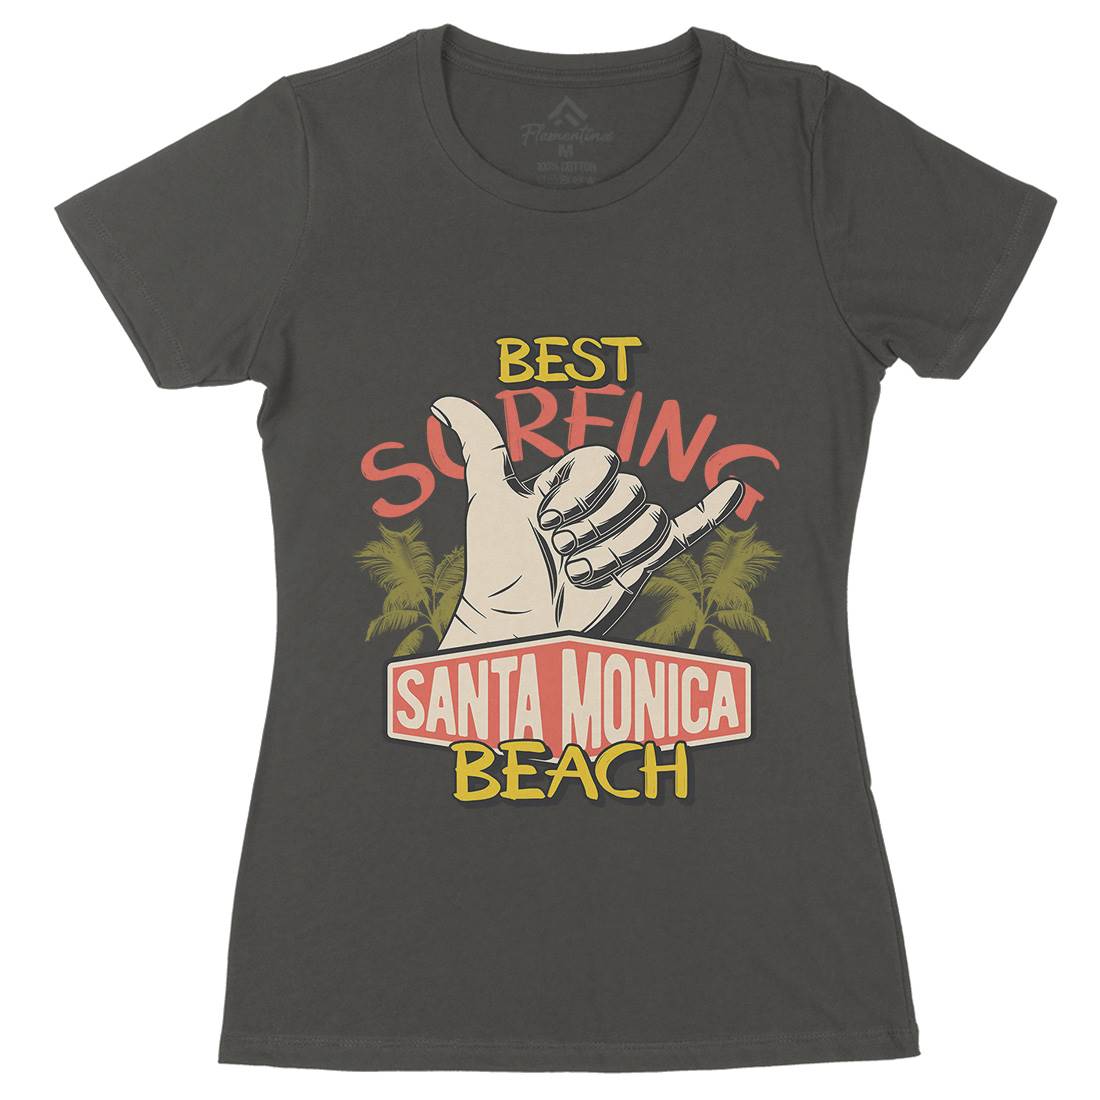 Best Surfing Beach Womens Organic Crew Neck T-Shirt Surf D909